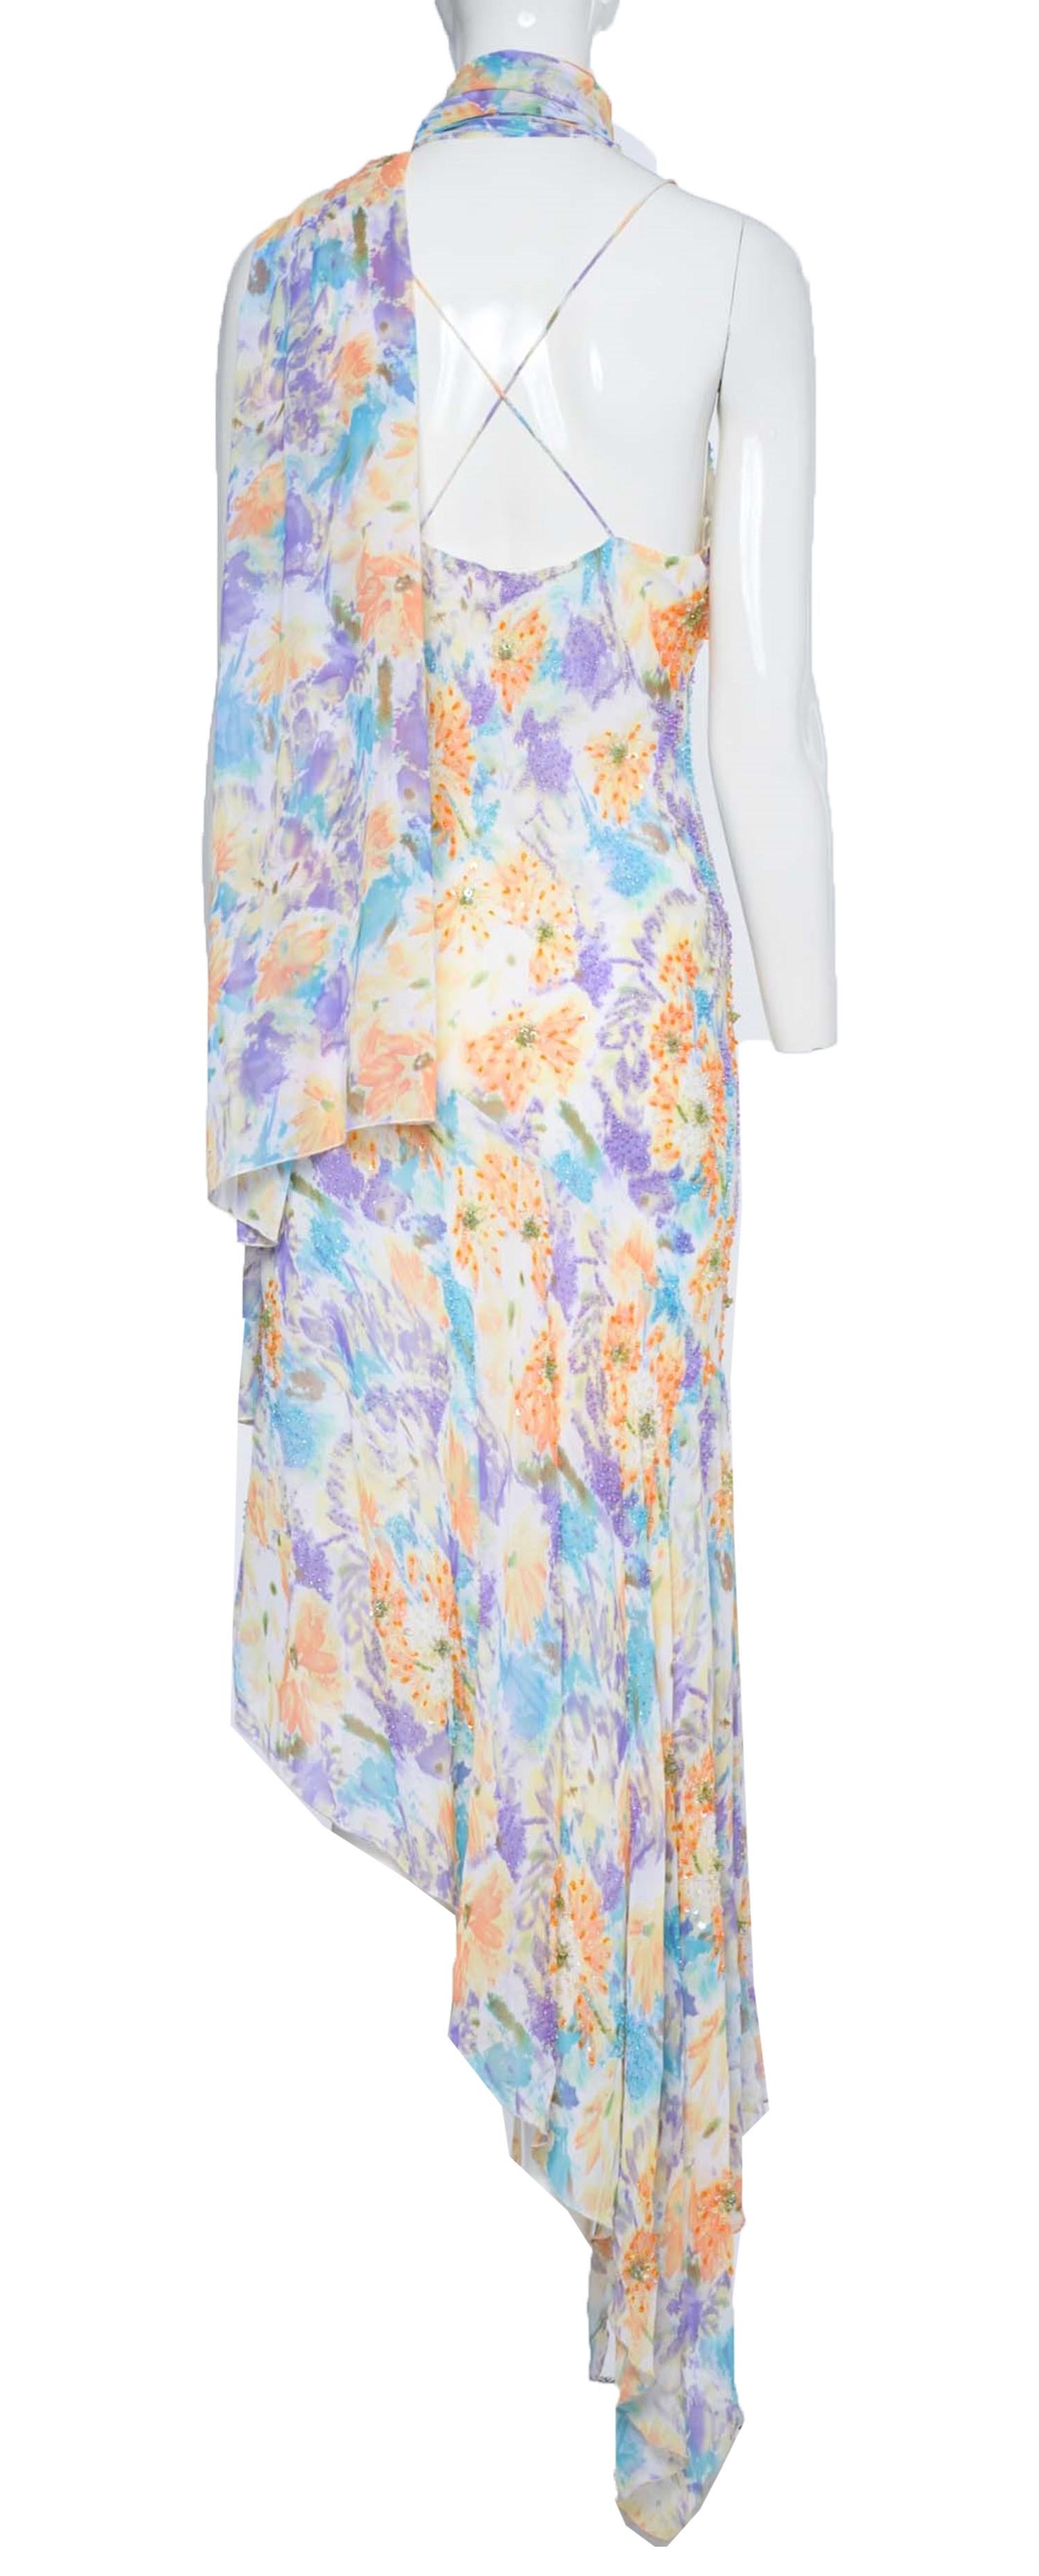 Cette robe vintage Diane Freis, avec son superbe imprimé floral violet, bleu et orange sur fond ivoire, est parfaite pour une variété d'occasions. Que vous assistiez à un cocktail ou à un mariage d'été en tant qu'invitée, cette robe vous permettra